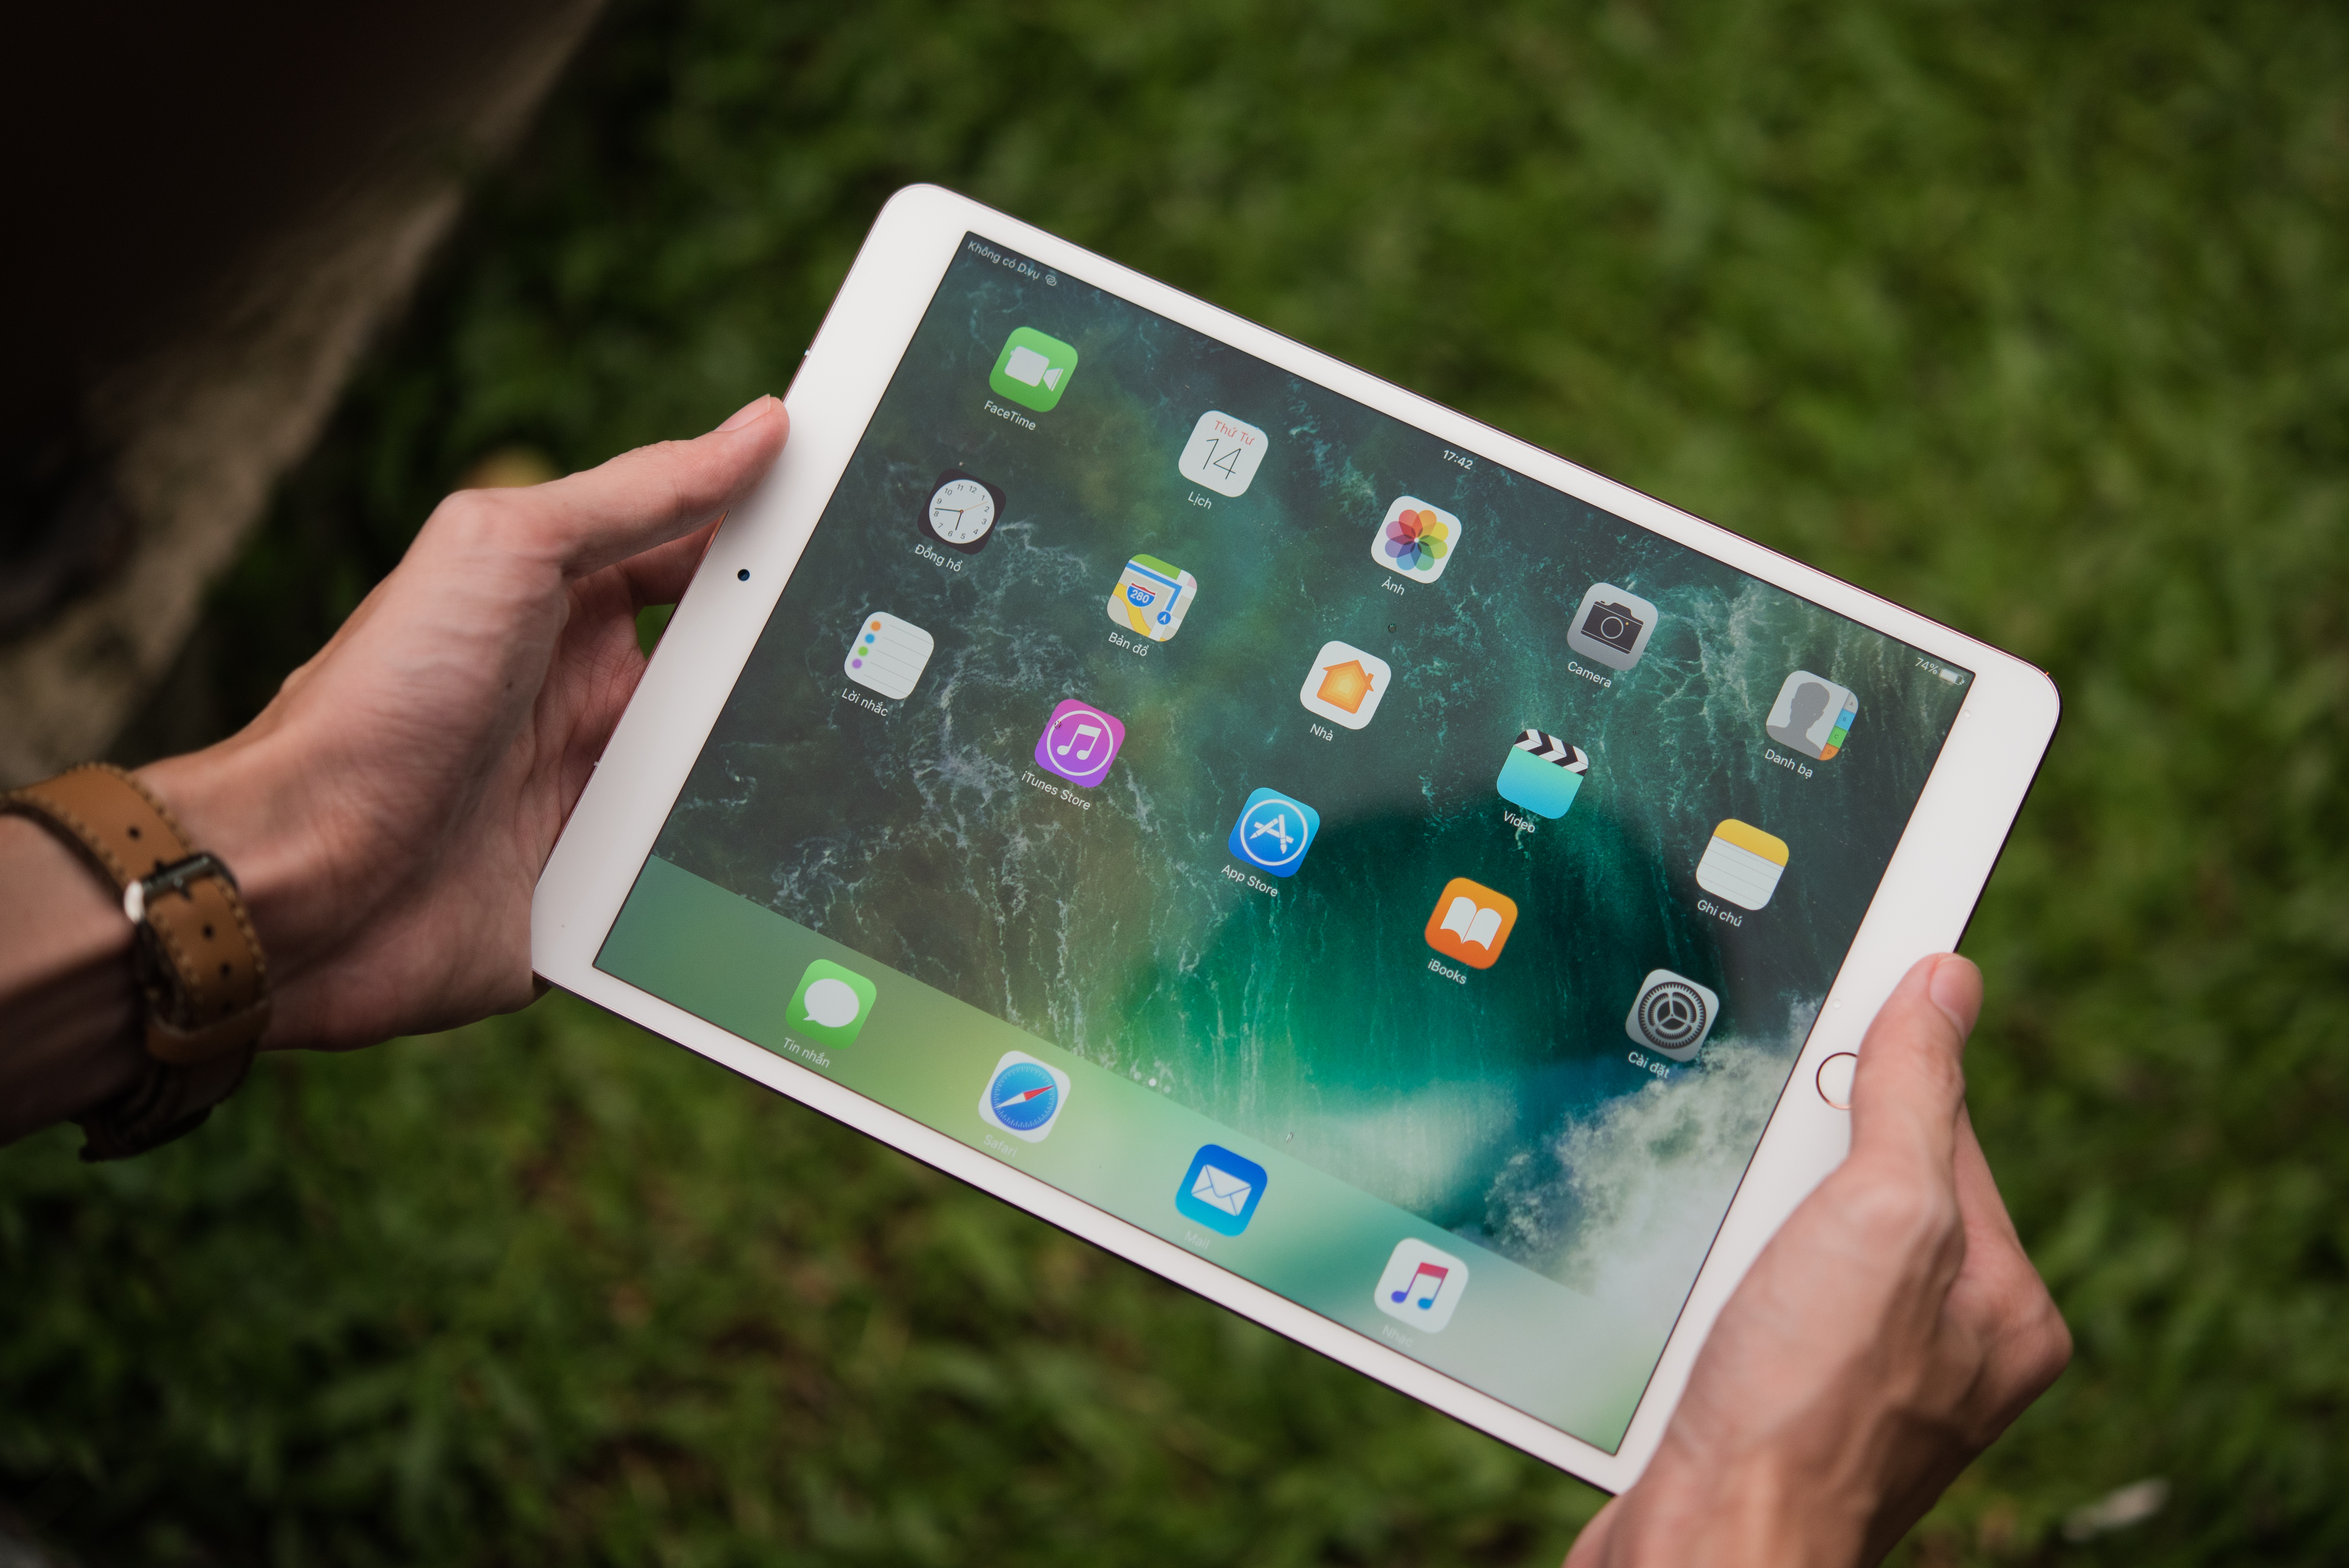 Une photo montre une personne tenant un iPad Pro. Il y a des widgets et des applications colorés à l'écran.